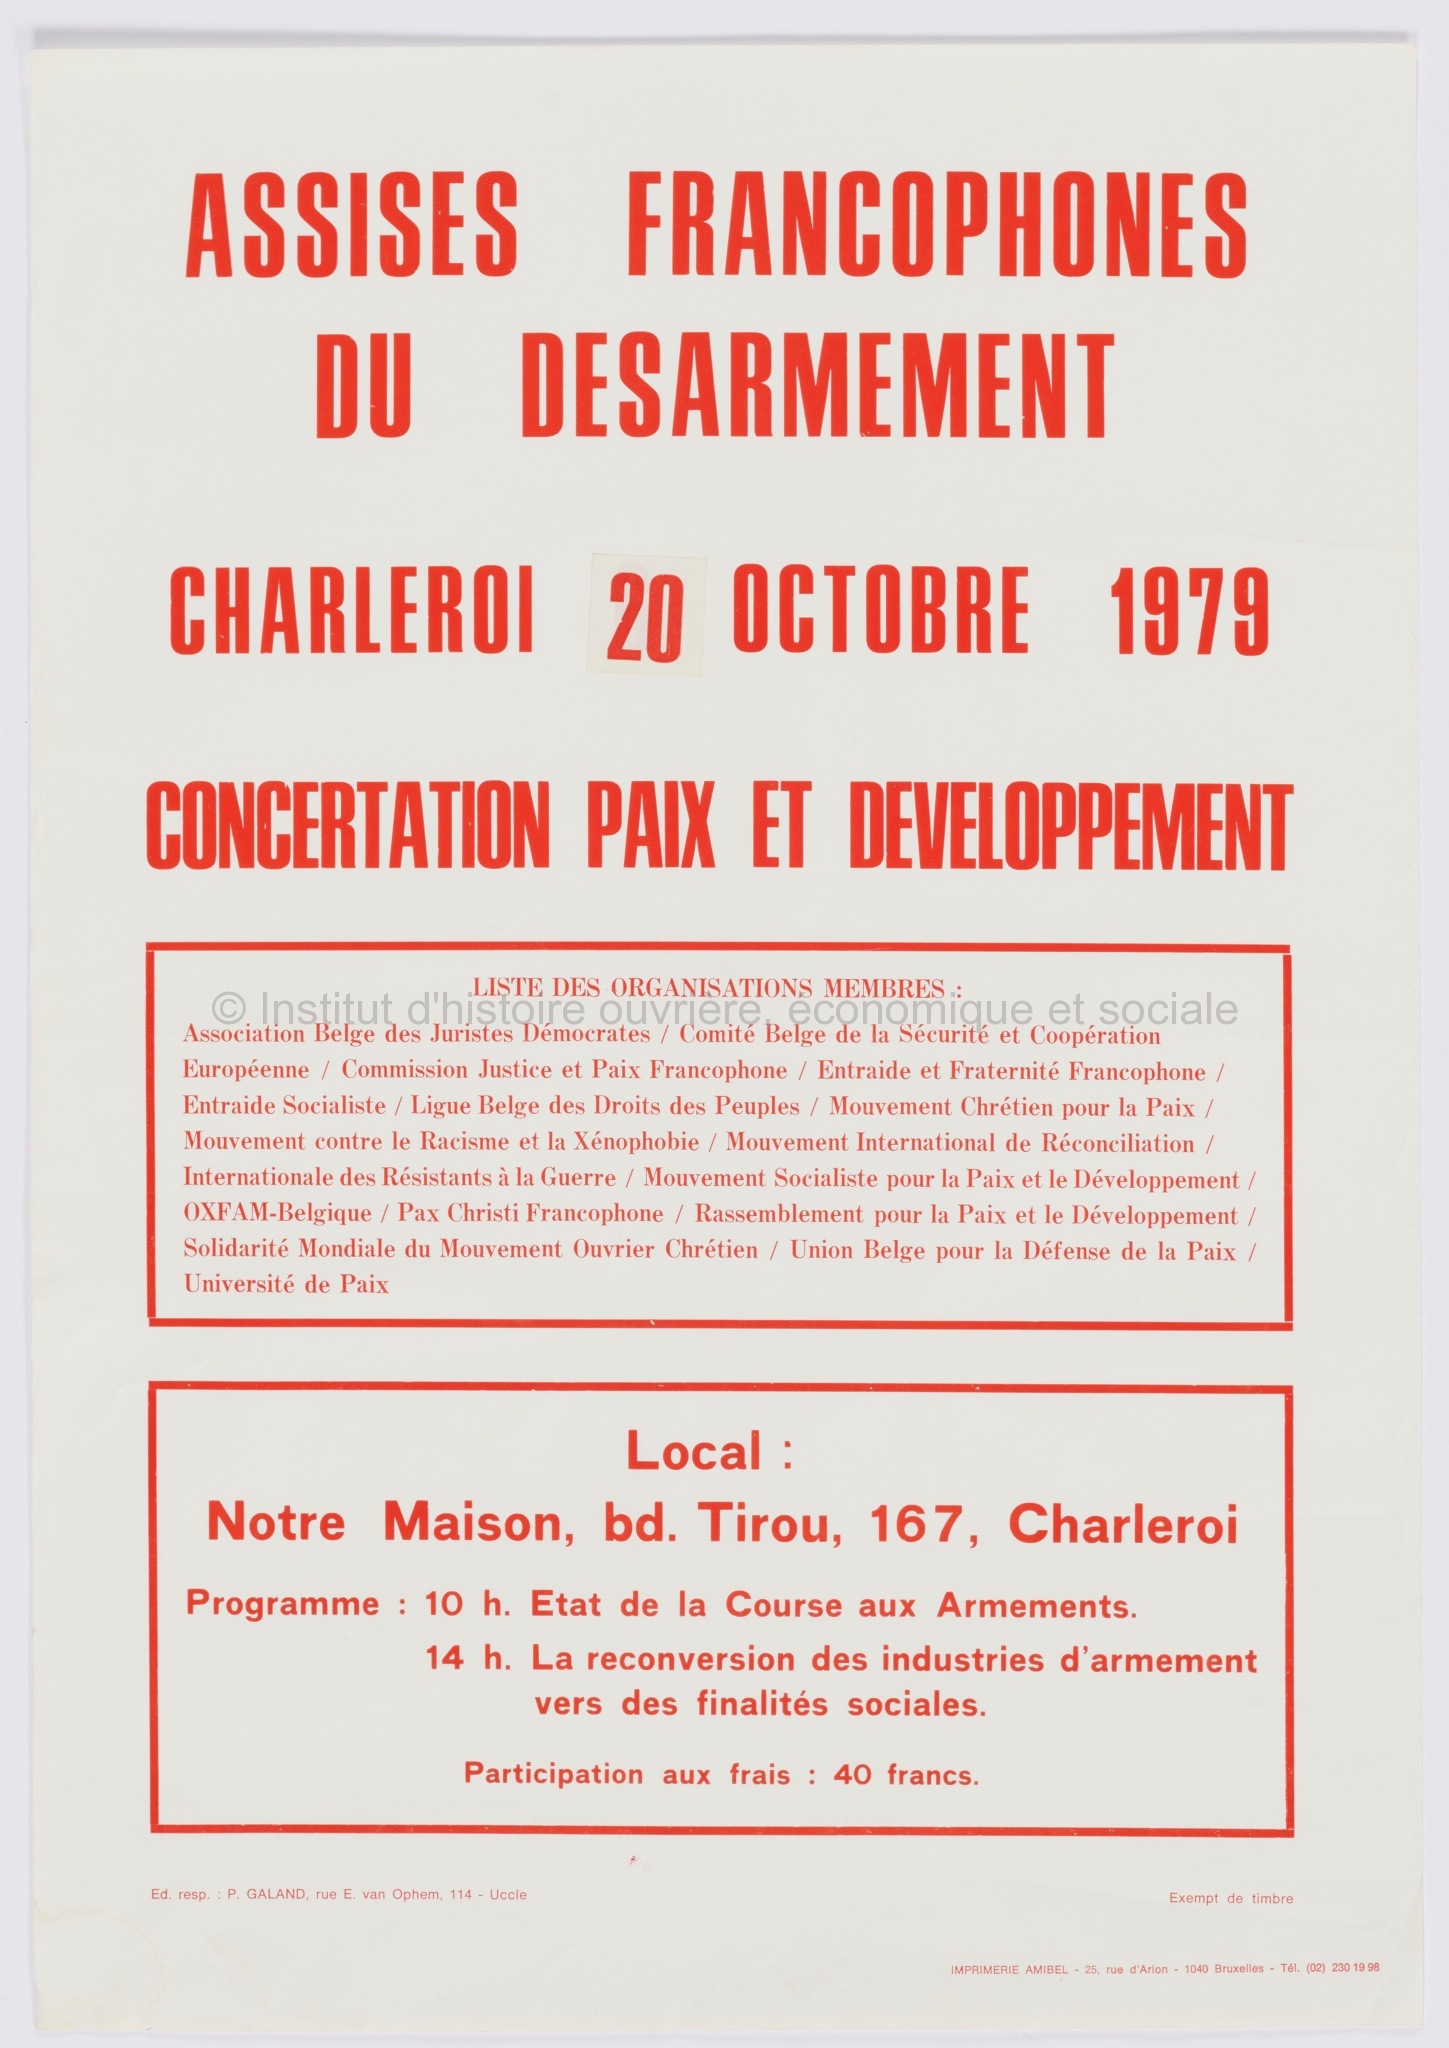 Assises francophones du désarmement : Charleroi 20 octobre 1979